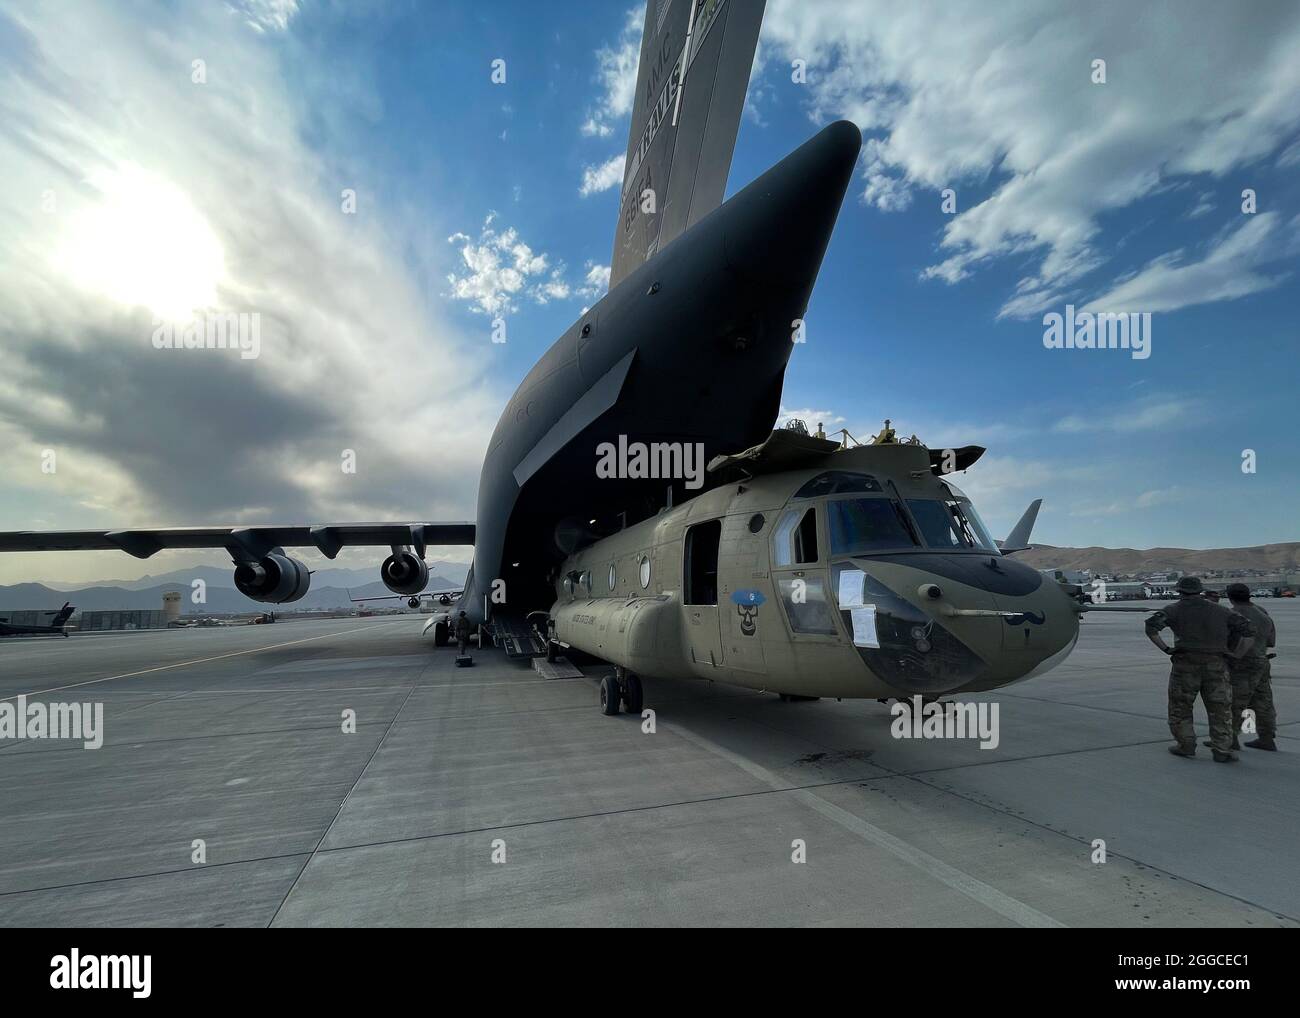 (210830) -- WASHINGTON, 30 de agosto de 2021 (Xinhua) -- UN Chinook CH-47 está cargado en un 17 Globemaster III de la Fuerza Aérea de los Estados Unidos en el Aeropuerto Internacional Hamid Karzai en Kabul, Afganistán, el 28 de agosto de 2021. El Comando Central de los Estados Unidos anunció el lunes que la retirada de las tropas estadounidenses de Afganistán se ha completado, terminando 20 años de invasión encabezada por los Estados Unidos al país. (EE.UU Asuntos Públicos del Mando Central/Folleto a través de Xinhua) Foto de stock